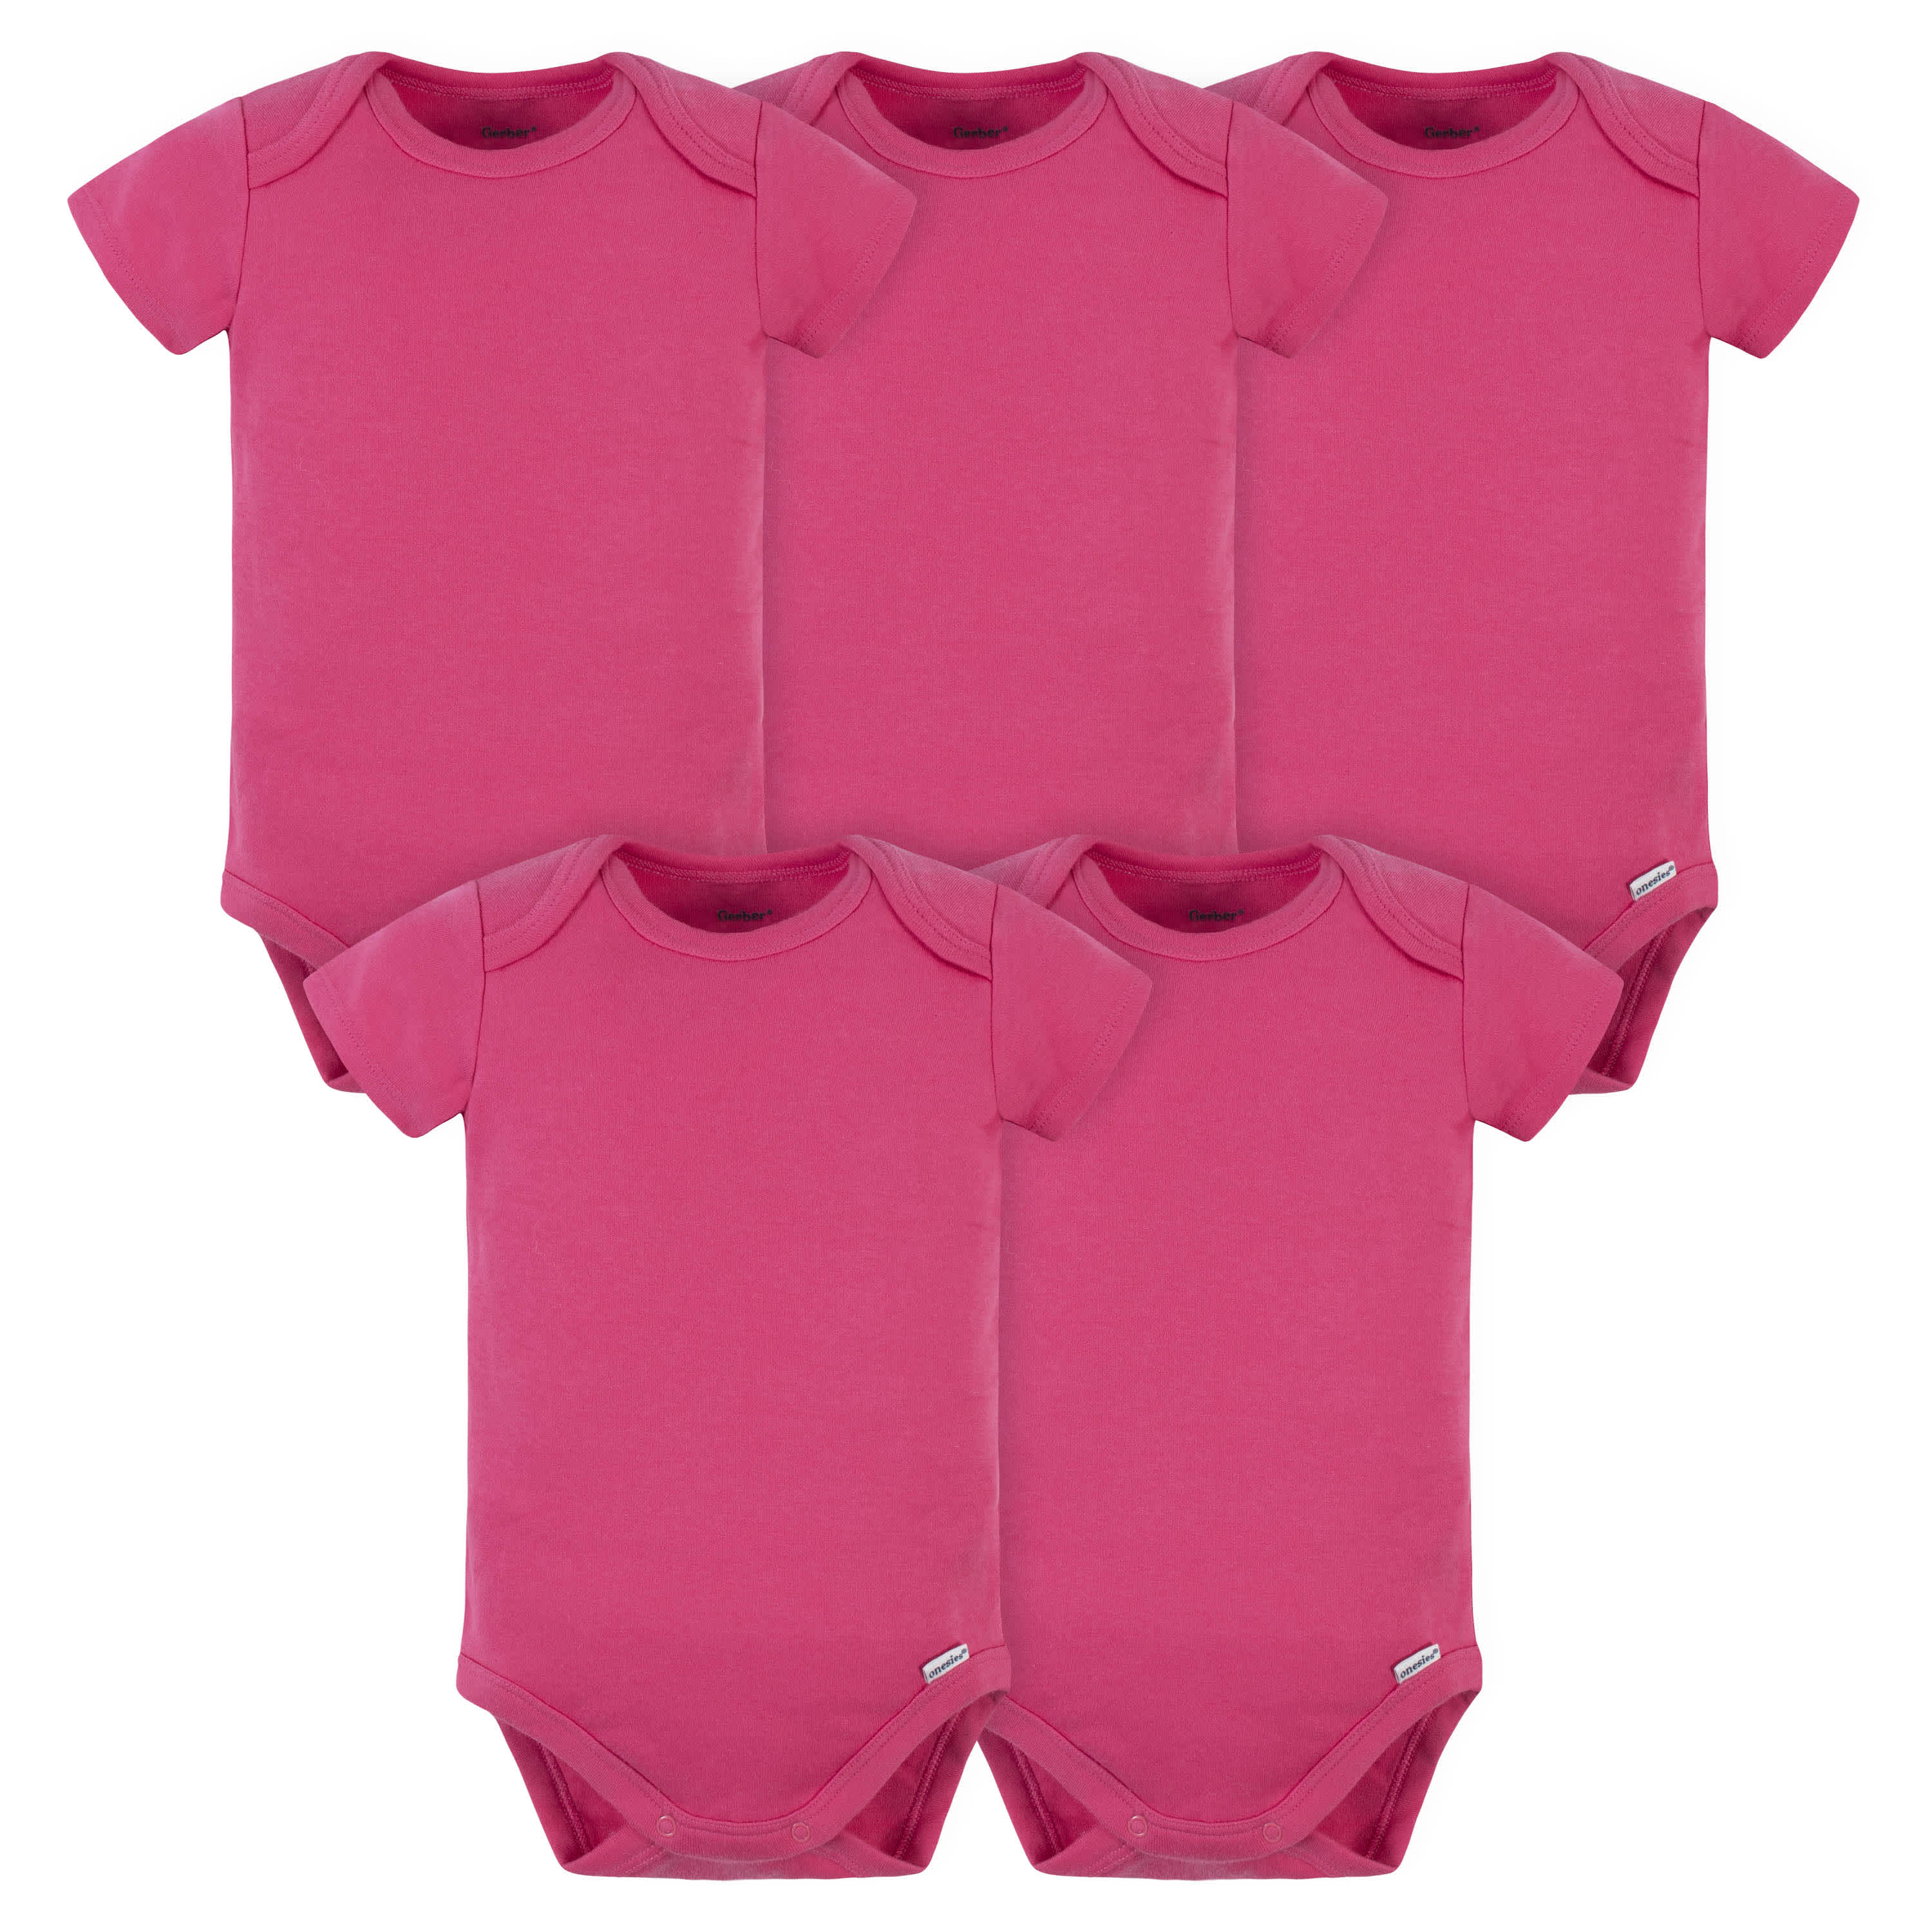 Gerber Baby Girls Toddler Multi-Pack Premium Pants Leggings